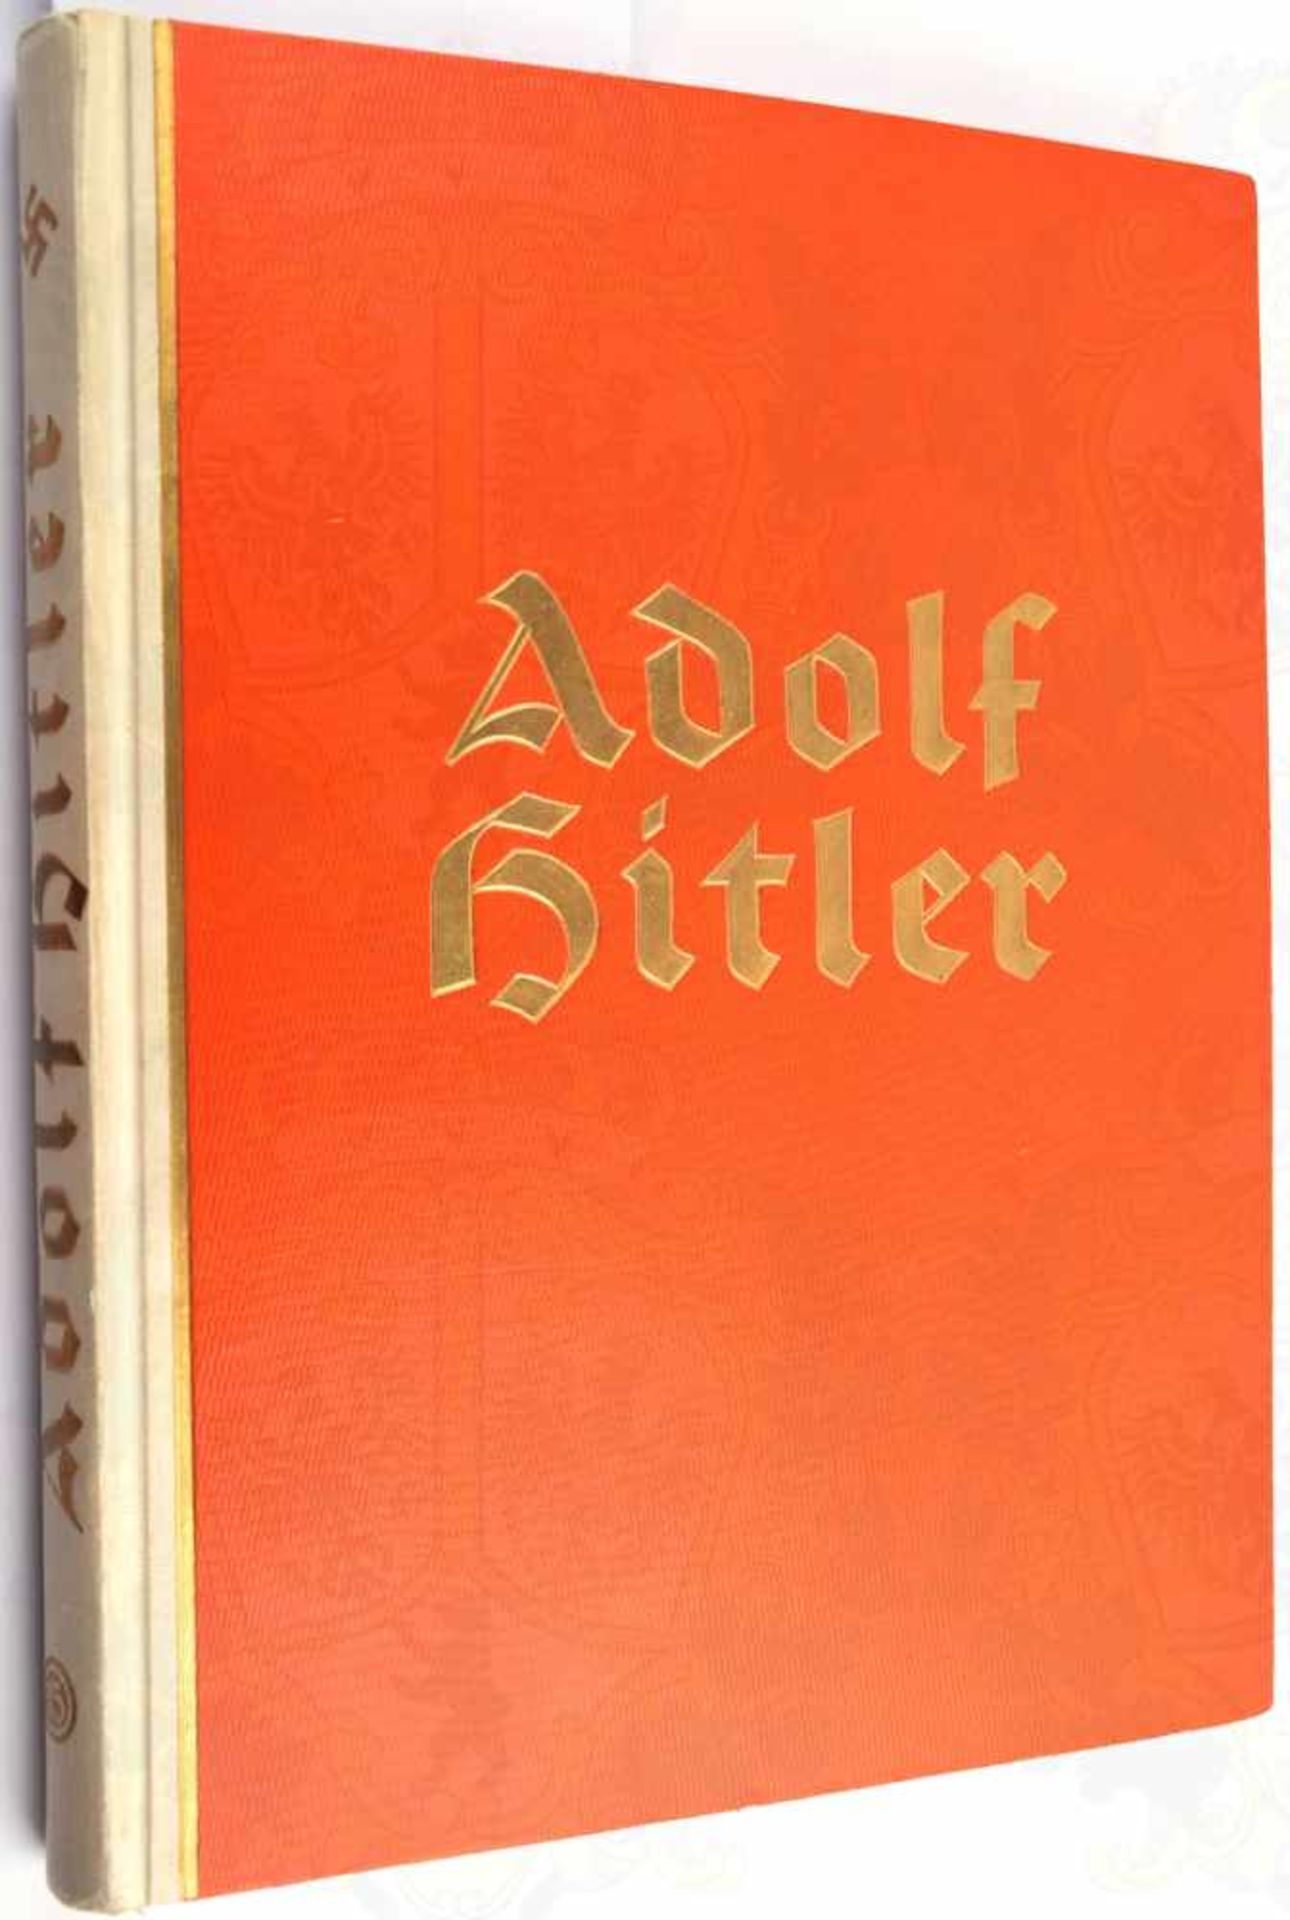 ADOLF HITLER - BILDER AUS DEM LEBEN DES FÜHRERS, 1201. Tsd., Reemtsma um 1938, 202 Bilder, kpl.,